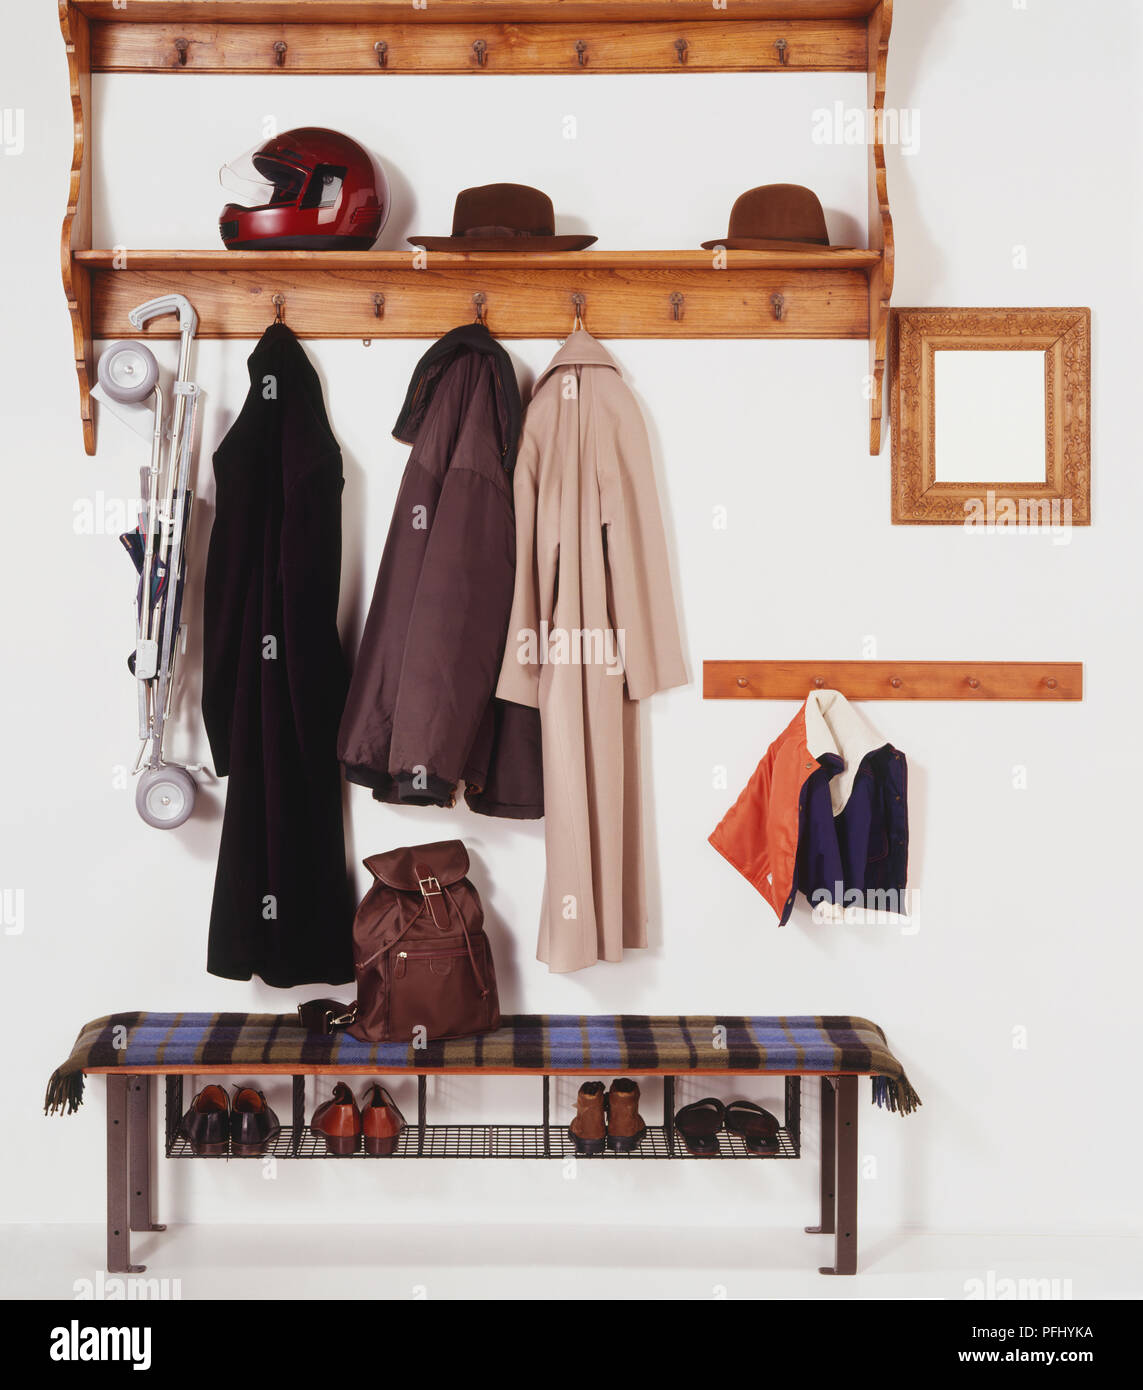 wooden coat and hat rack